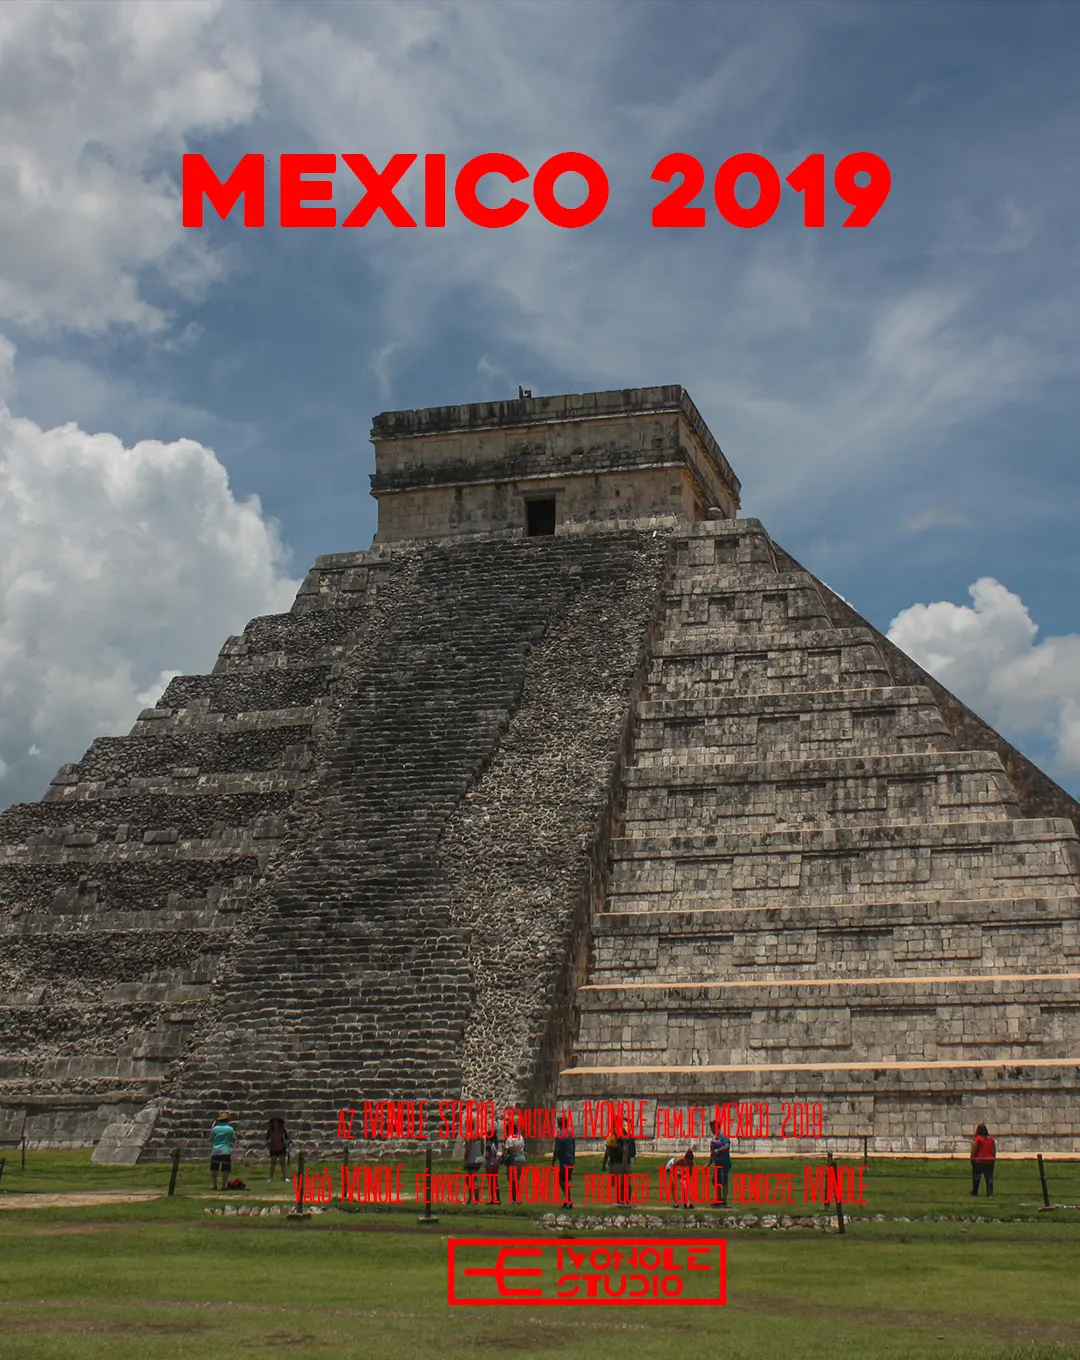 Mexico 2019